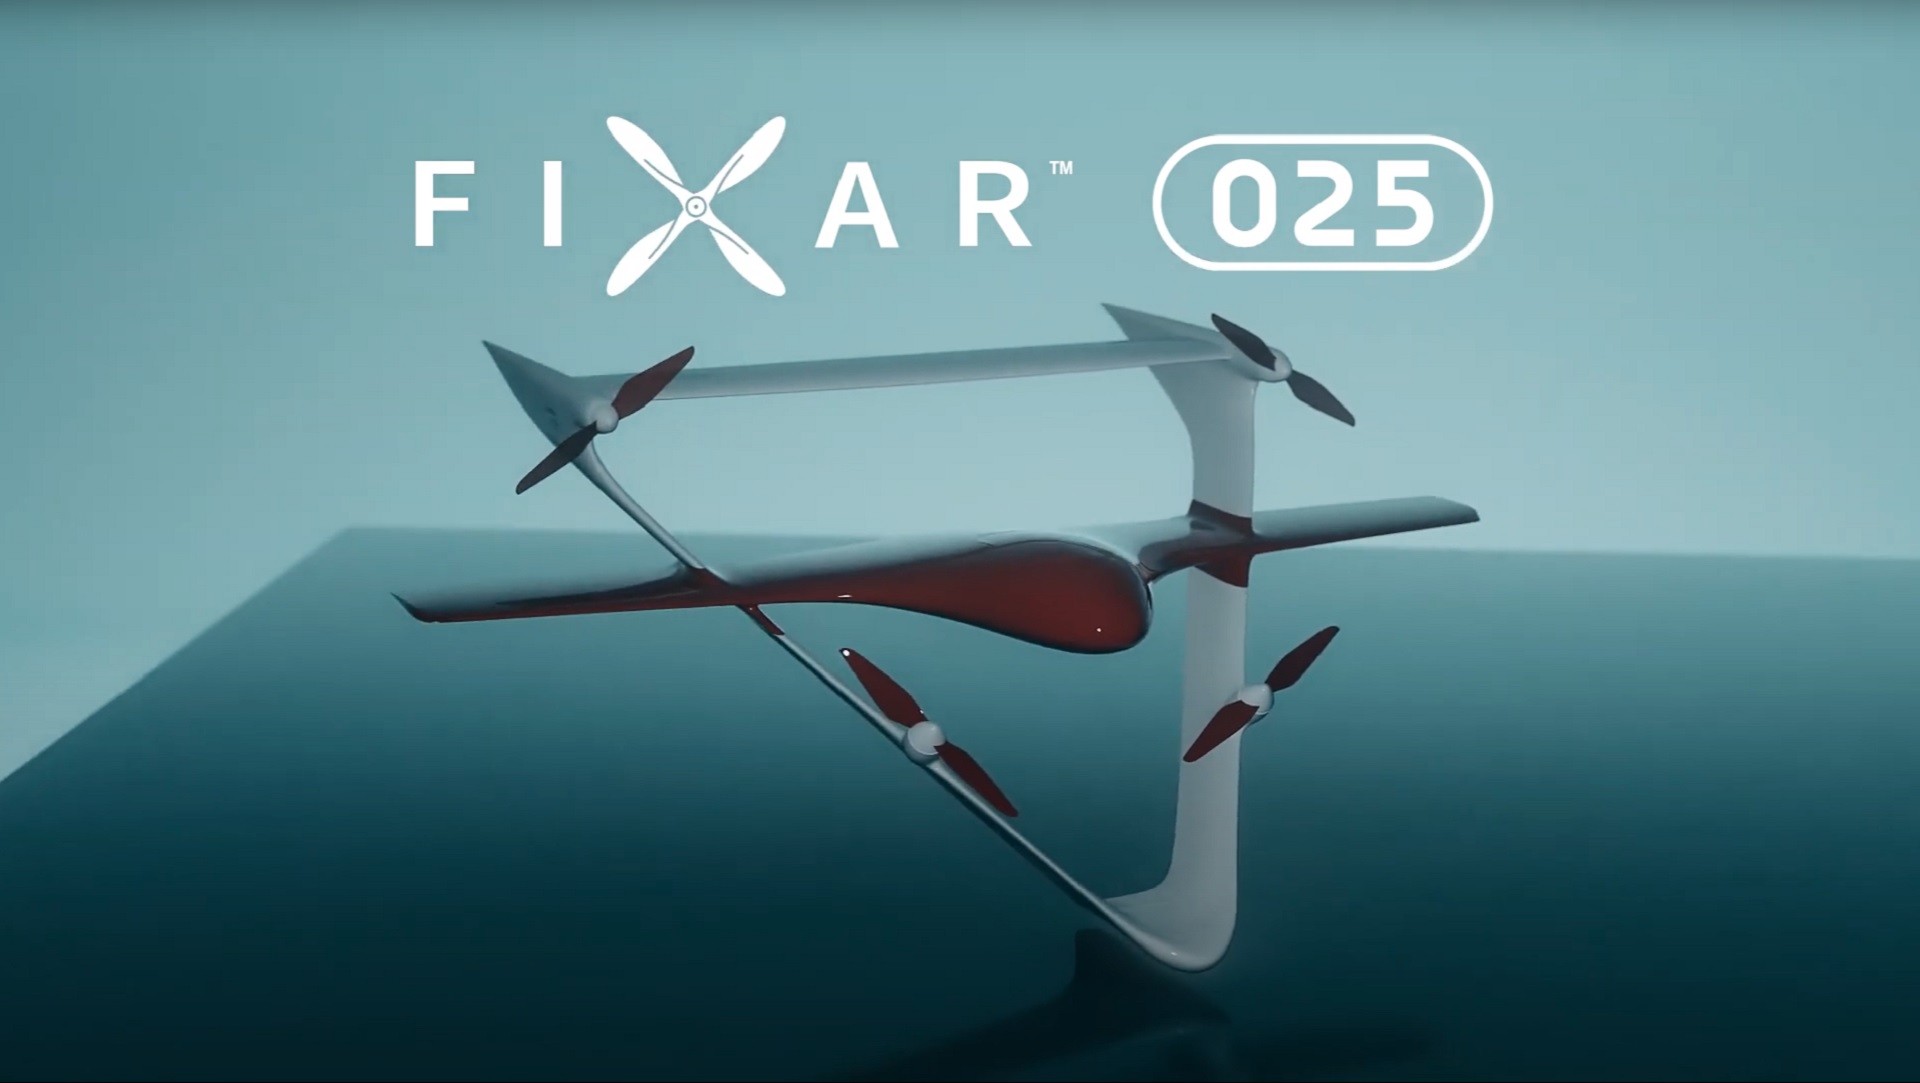 ModelForce buy VTOL Fixar 025 Drone in Estonia